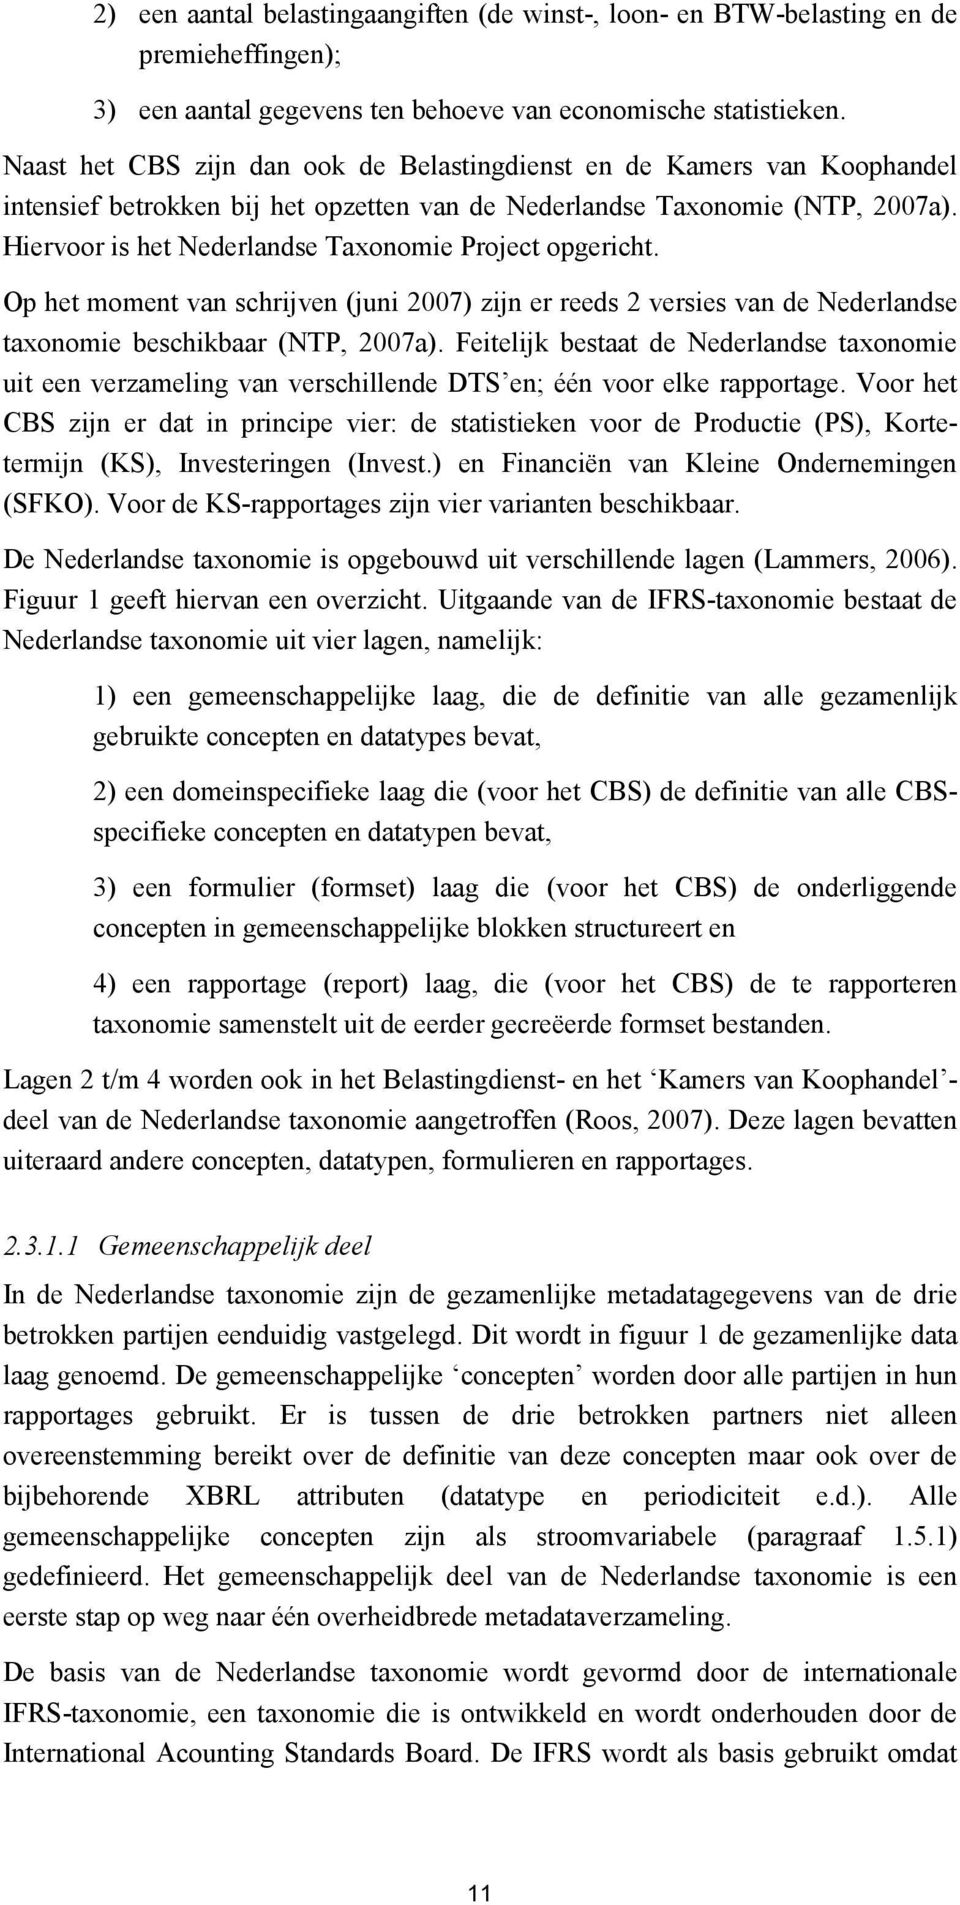 Hiervoor is het Nederlandse Taxonomie Project opgericht. Op het moment van schrijven (juni 2007) zijn er reeds 2 versies van de Nederlandse taxonomie beschikbaar (NTP, 2007a).